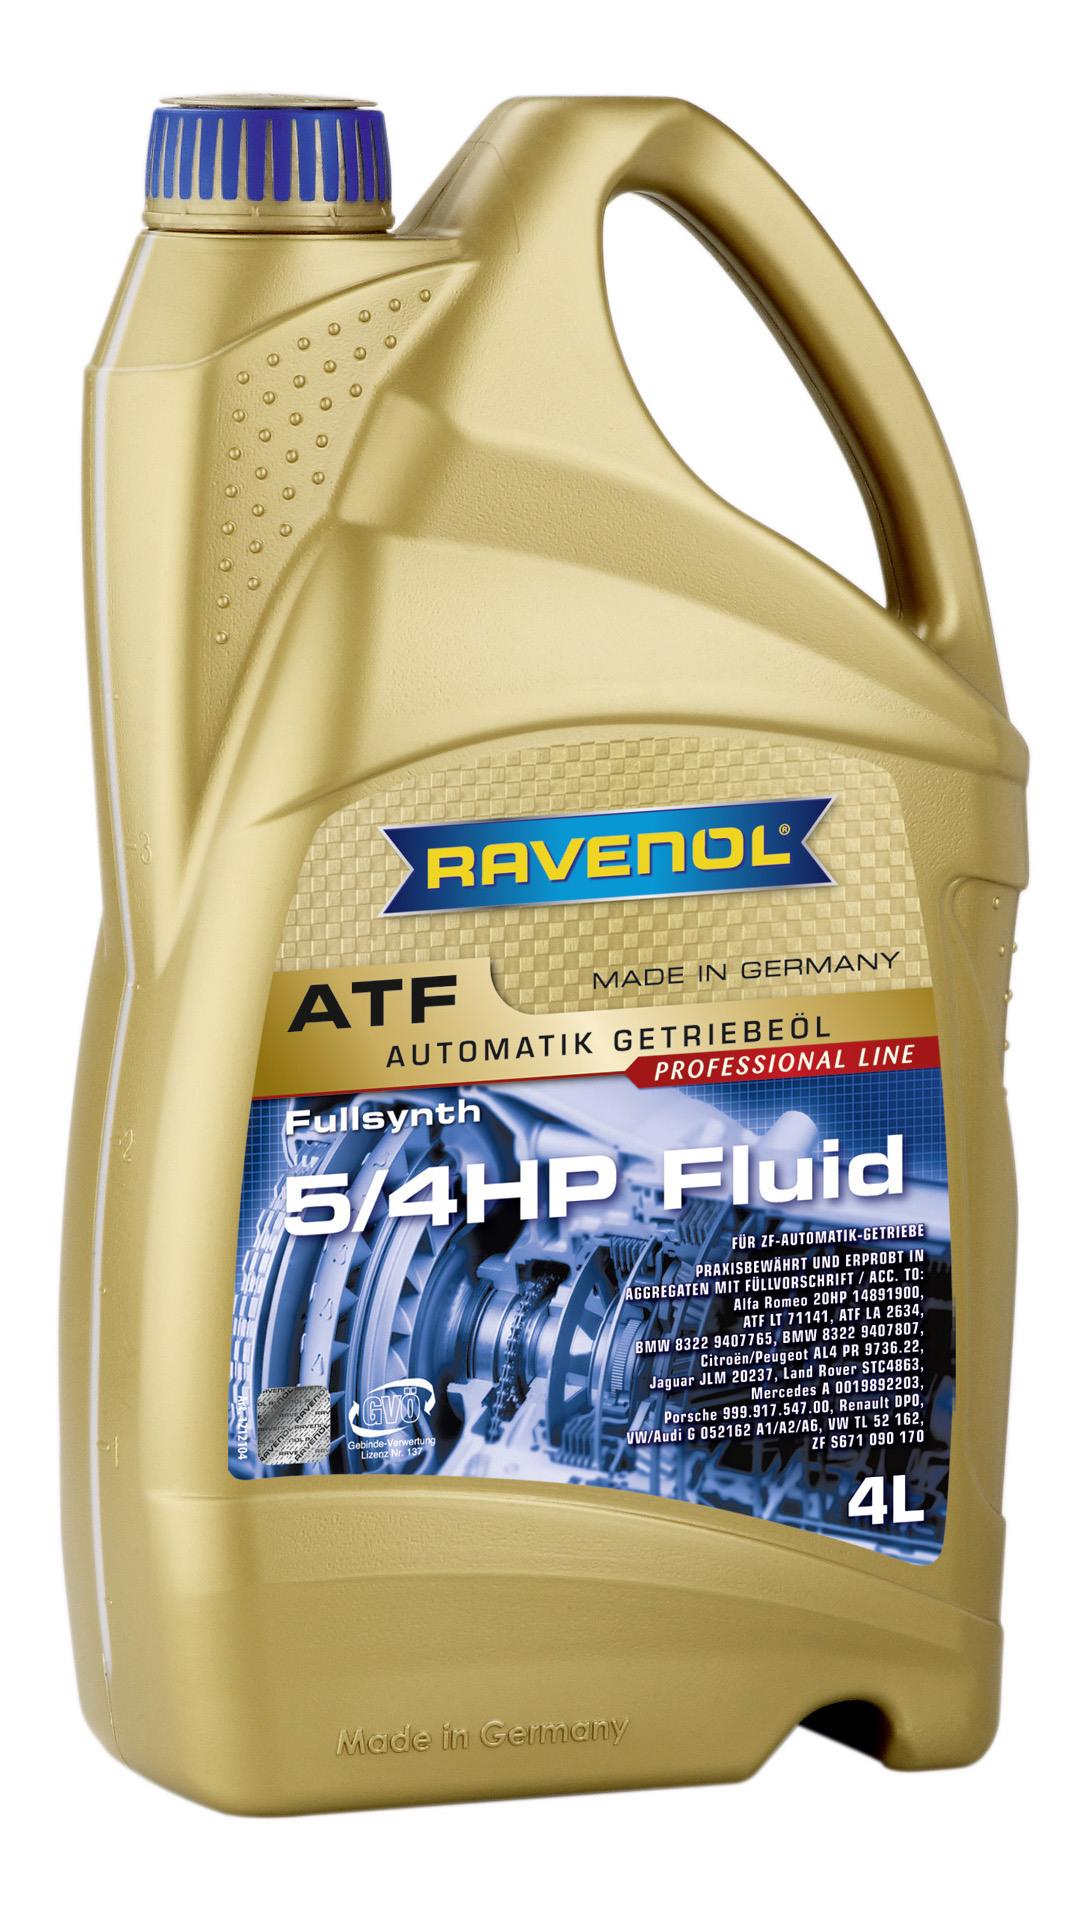 Трансмиссионное масло RAVENOL ATF 5/4 HP Fluid (4л) new